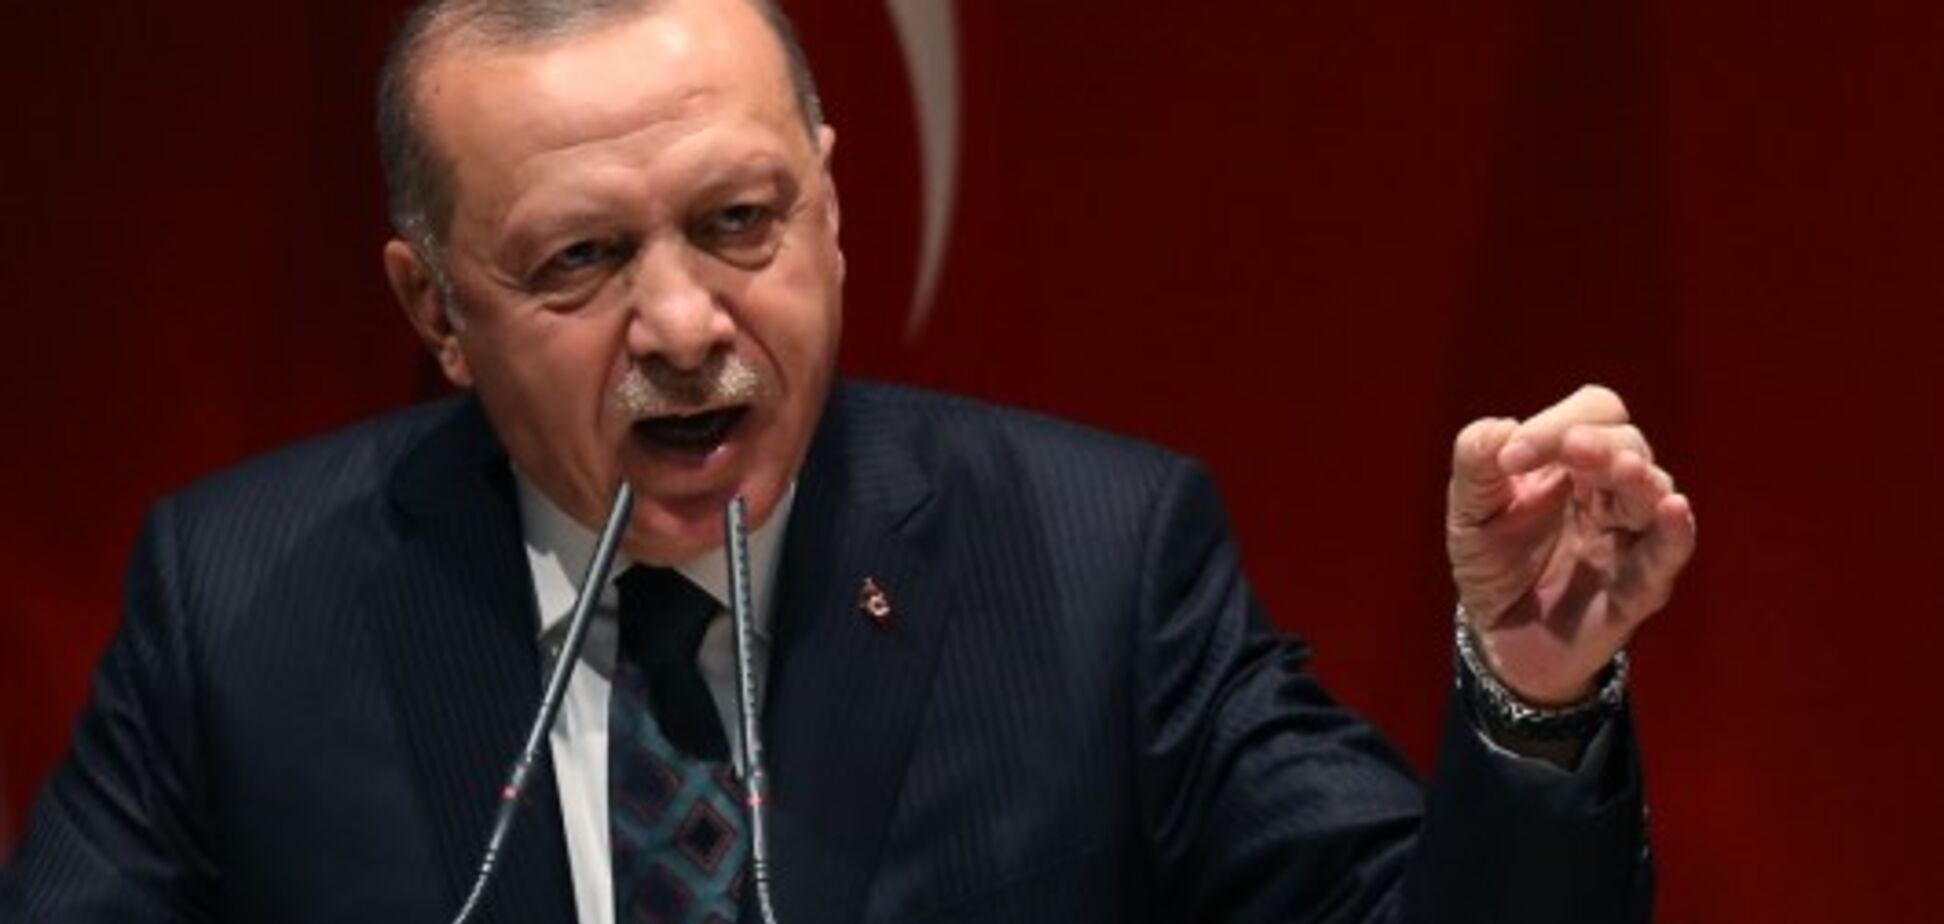 'Ми стрілятимемо всюди': Ердоган пригрозив масштабними ударами по Сирії